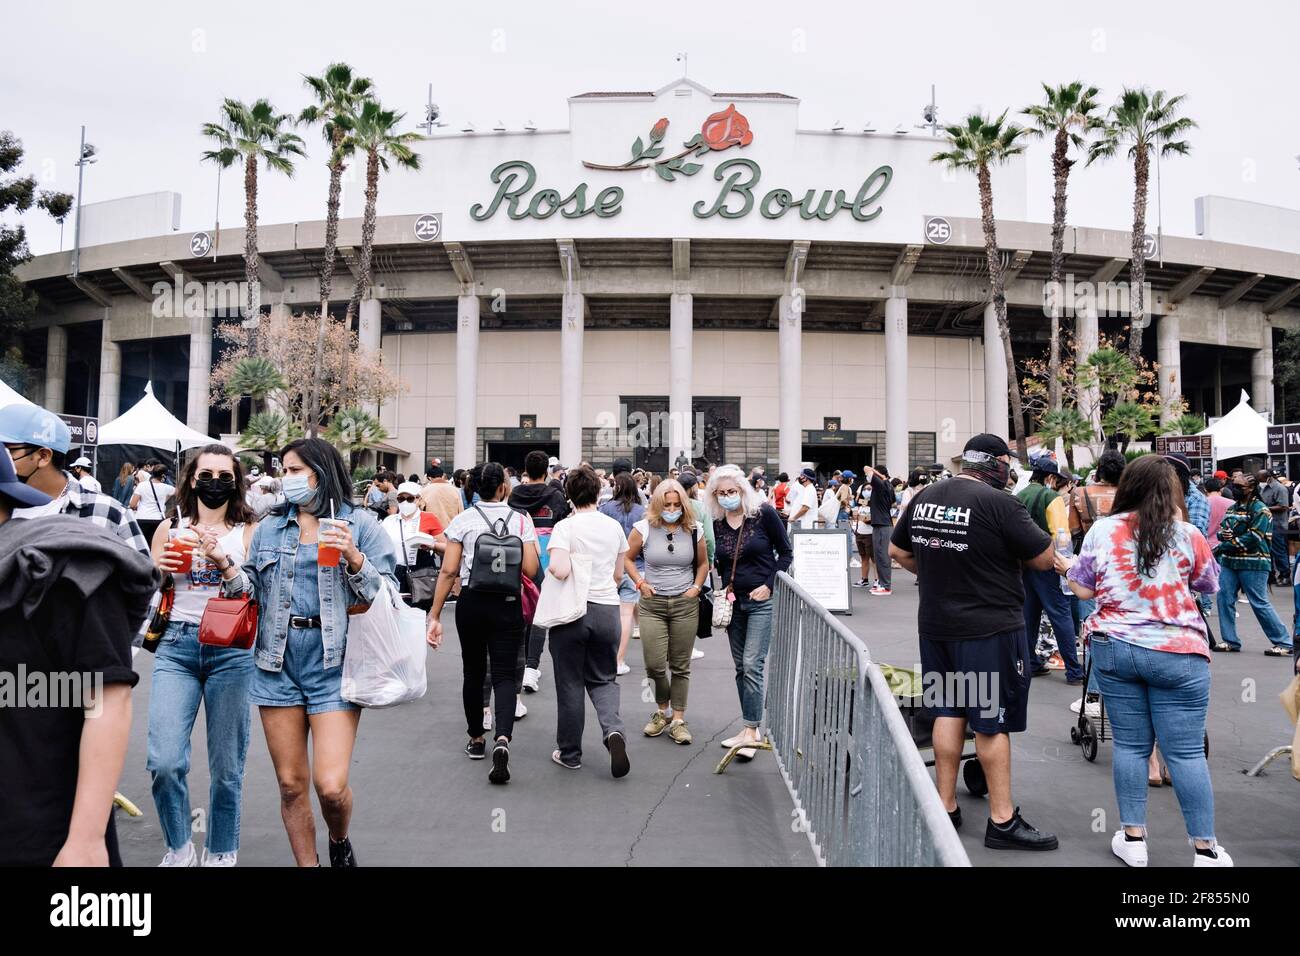 Pasadena, California/USA - 11 aprile 2021: Il Rose Bowl Flea Market riapre l'11 aprile 2021 per la prima volta dopo essere stato chiuso per il pandem Foto Stock